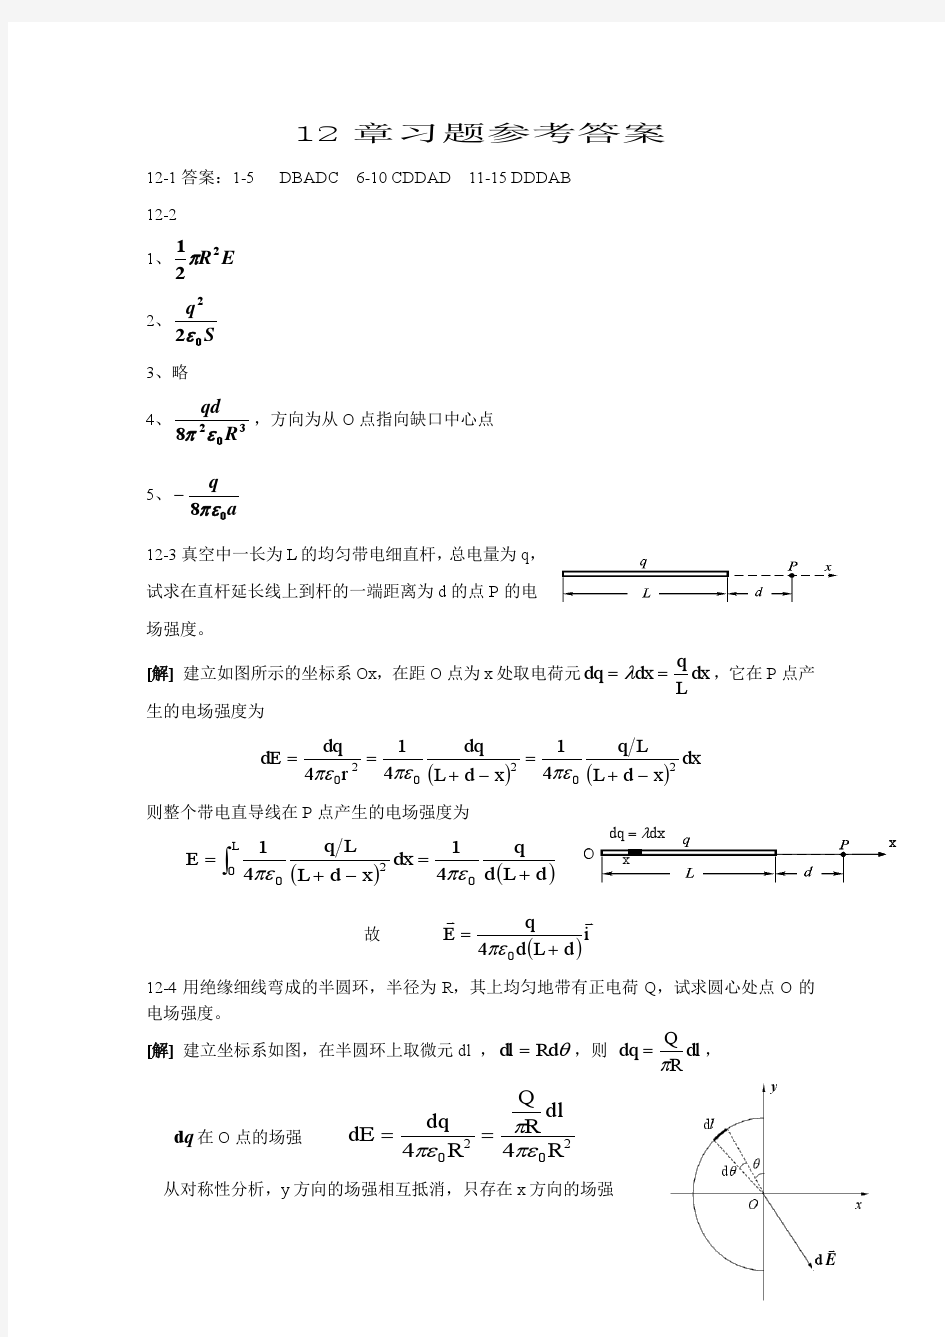 中国石油大学华东大学物理2-2课后习题答案详解